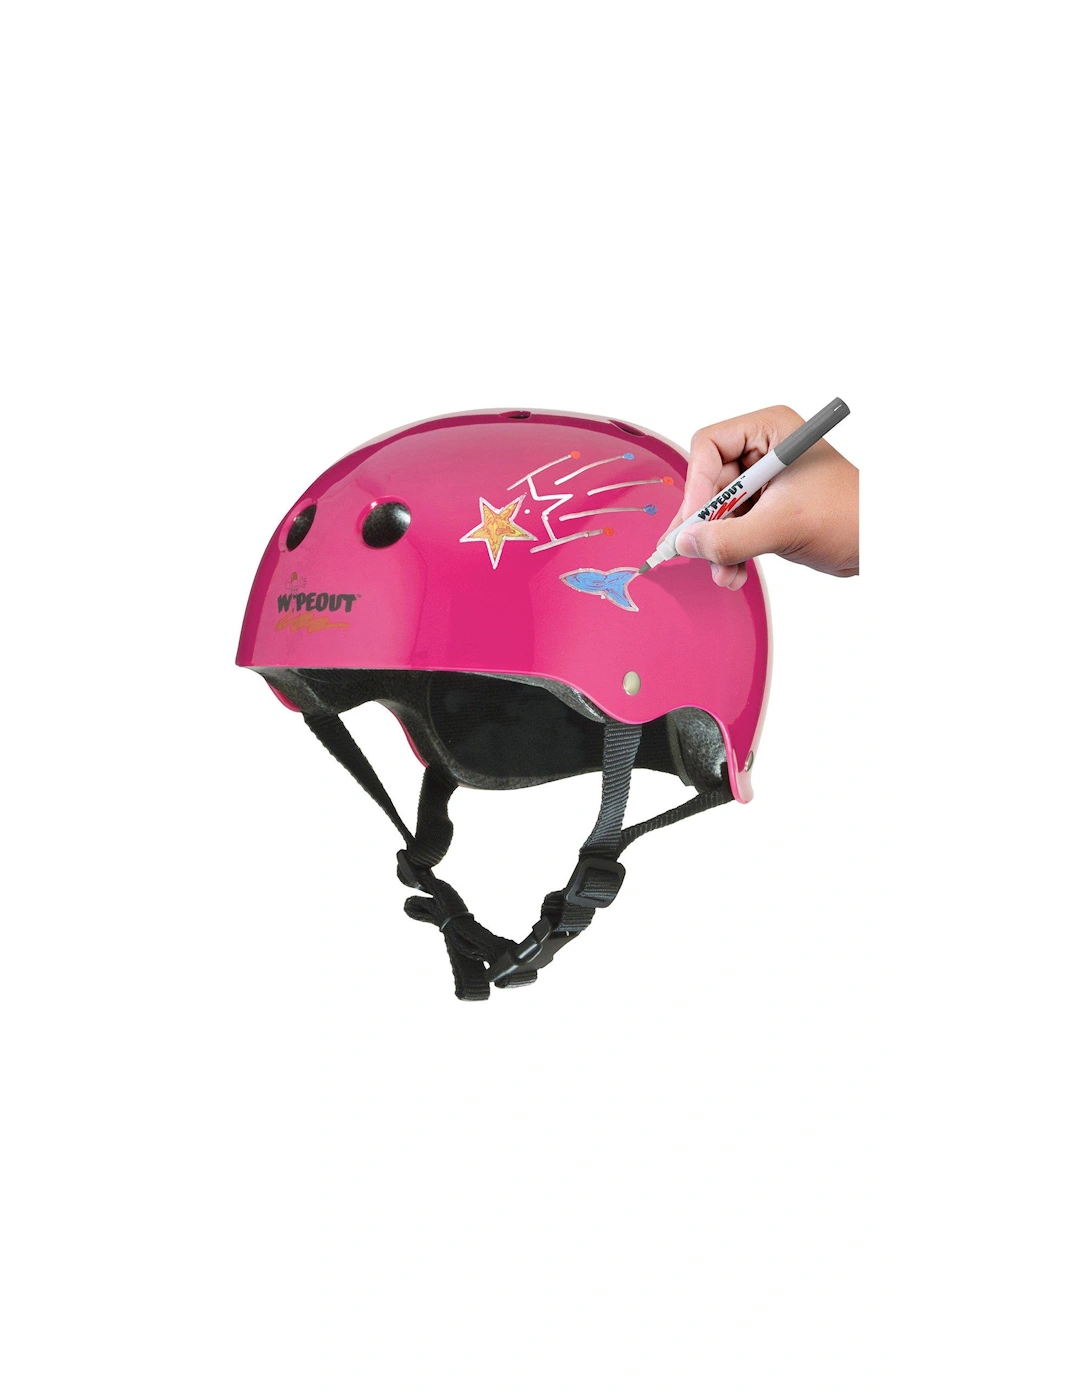 Helmet - Neon Pink, Age 8+, 2 of 1